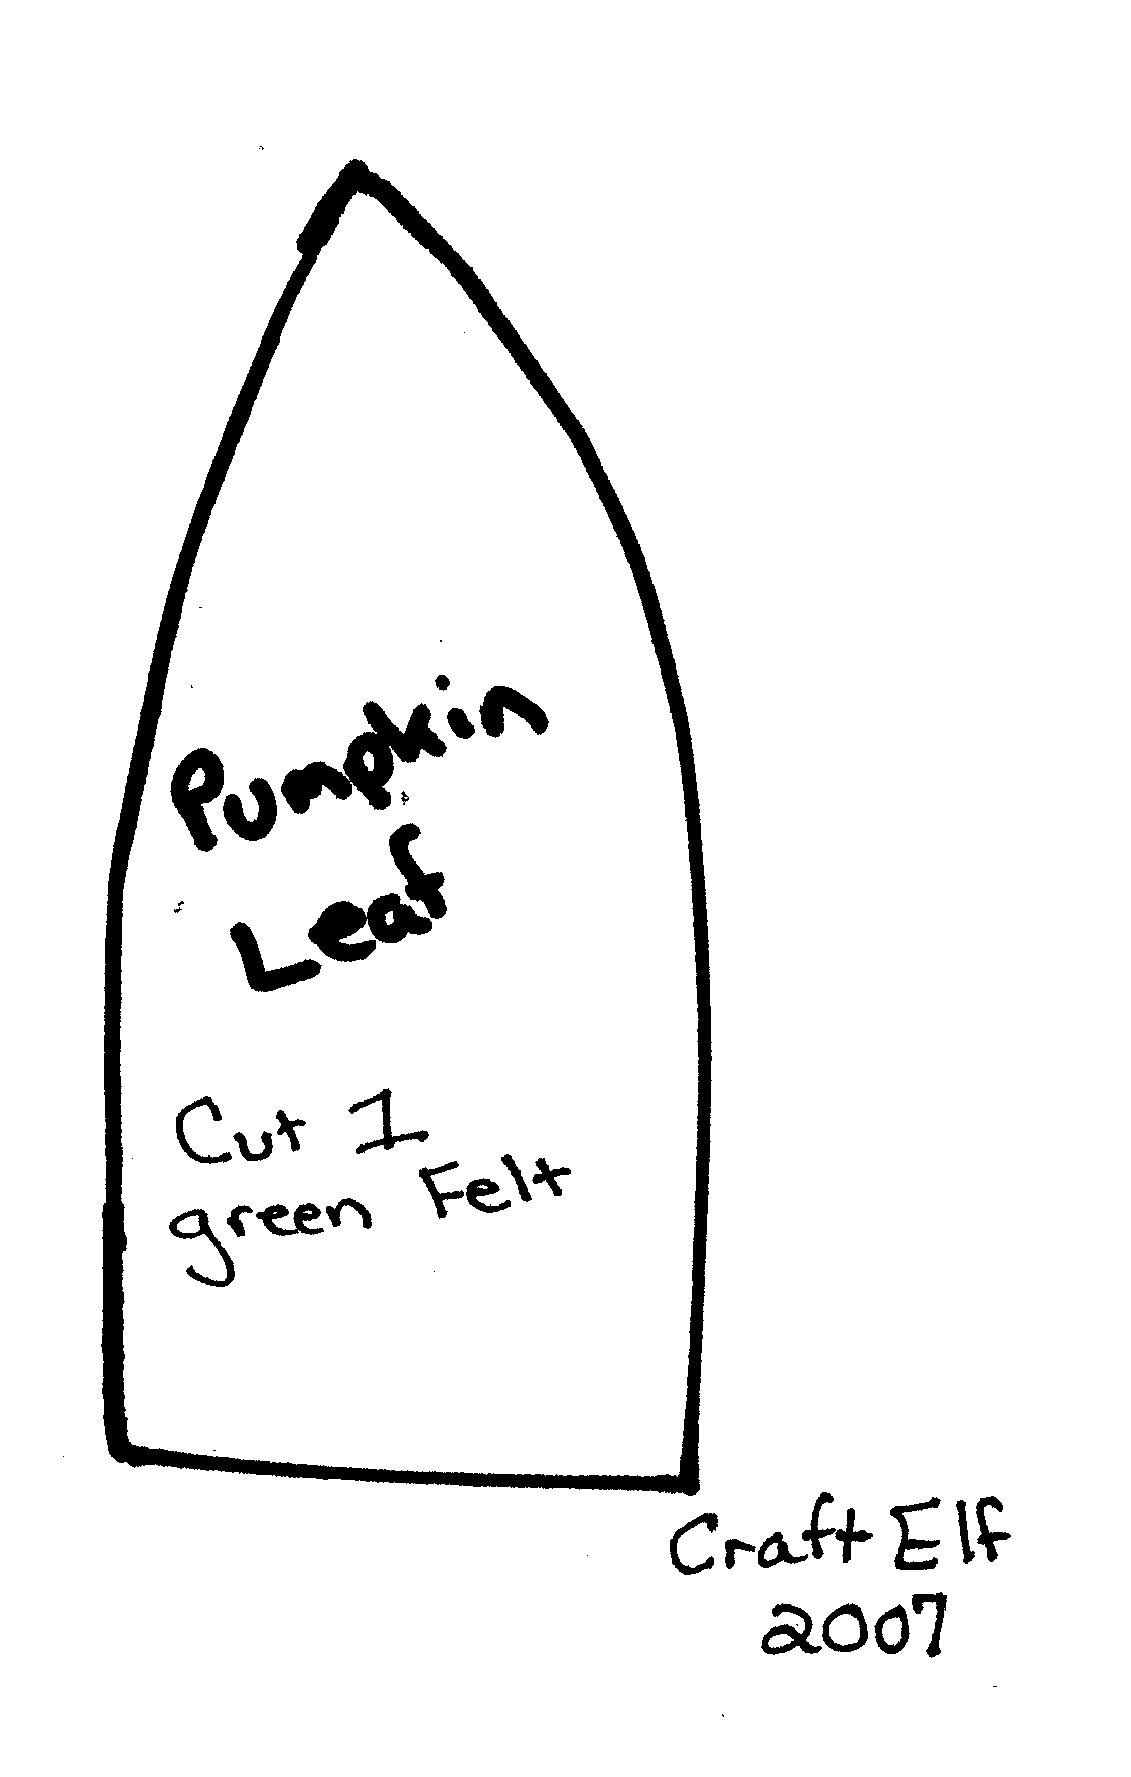 leaf template